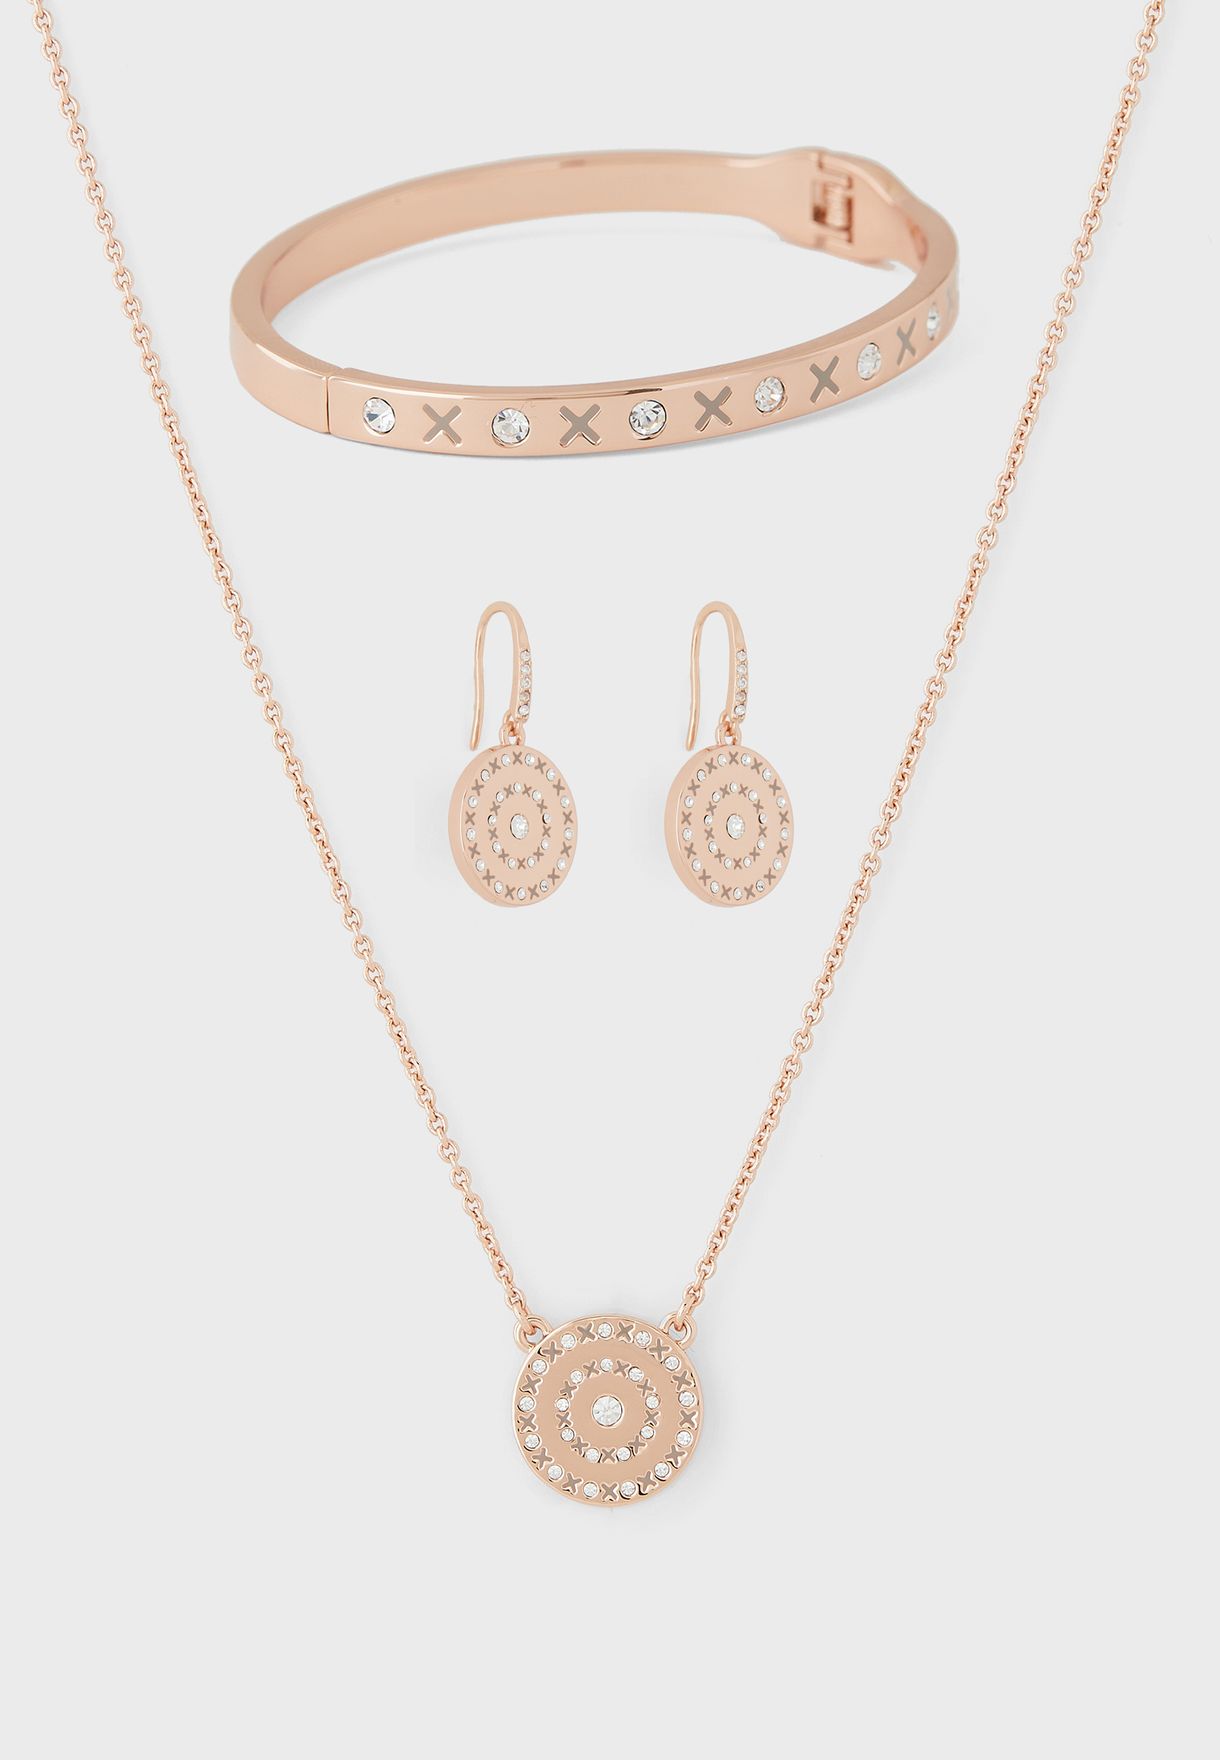 Bracelet + Earrings + Necklace Set